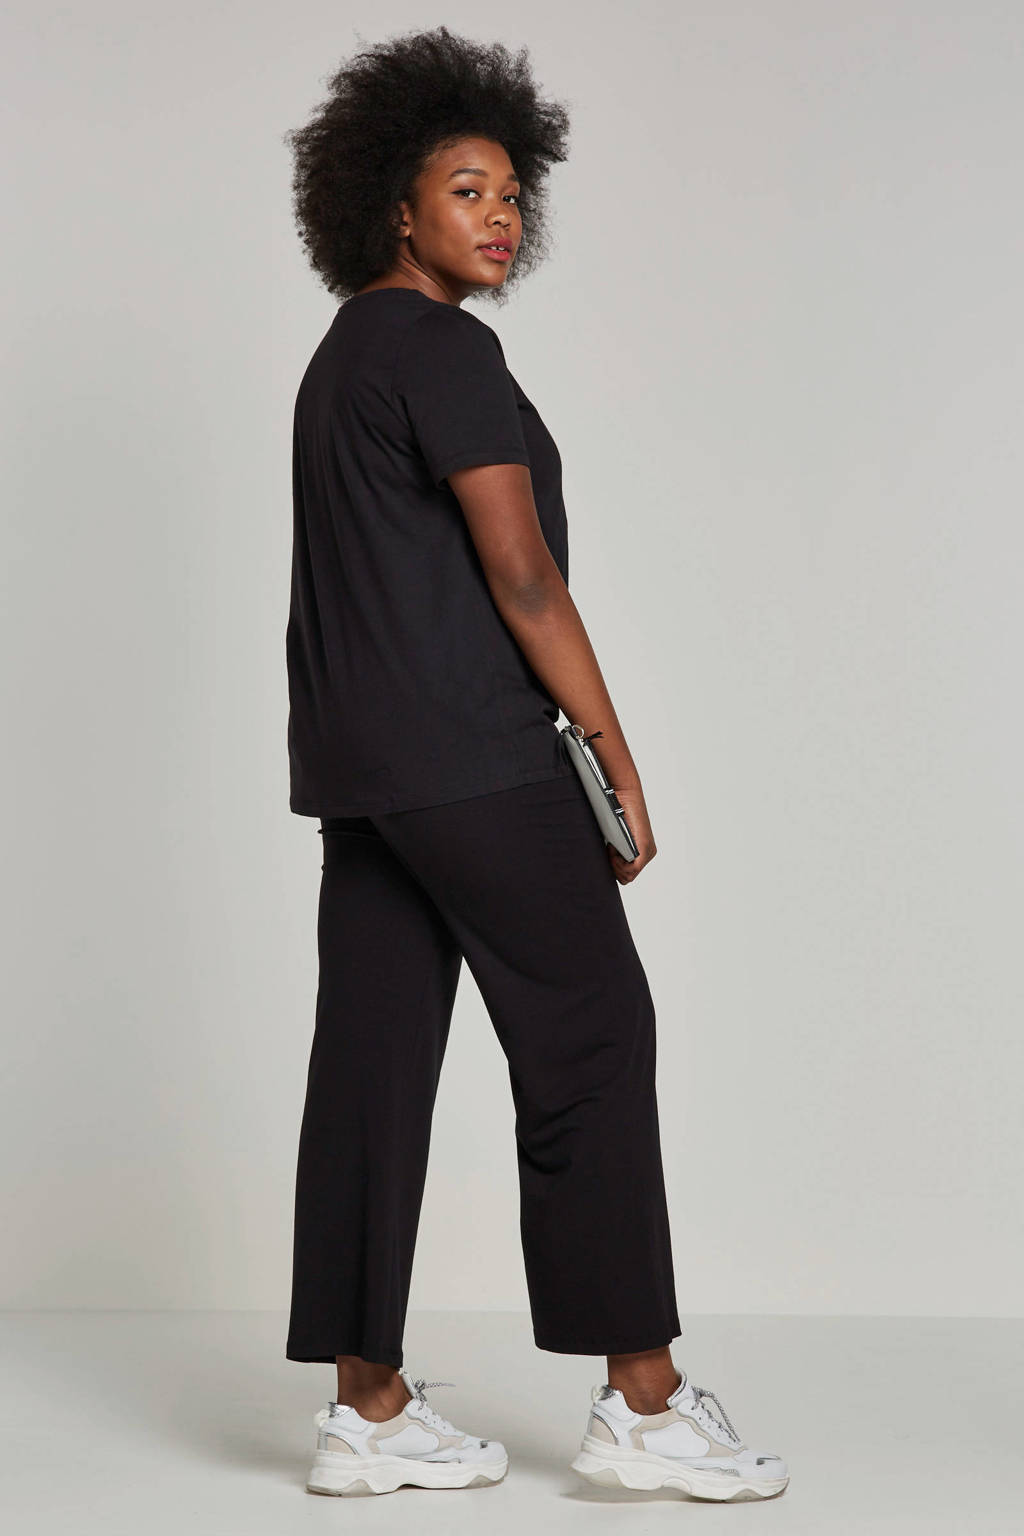 Zwarte dames GREAT LOOKS broek pijpen van katoen met wijde pijpen, high waist en elastische tailleband